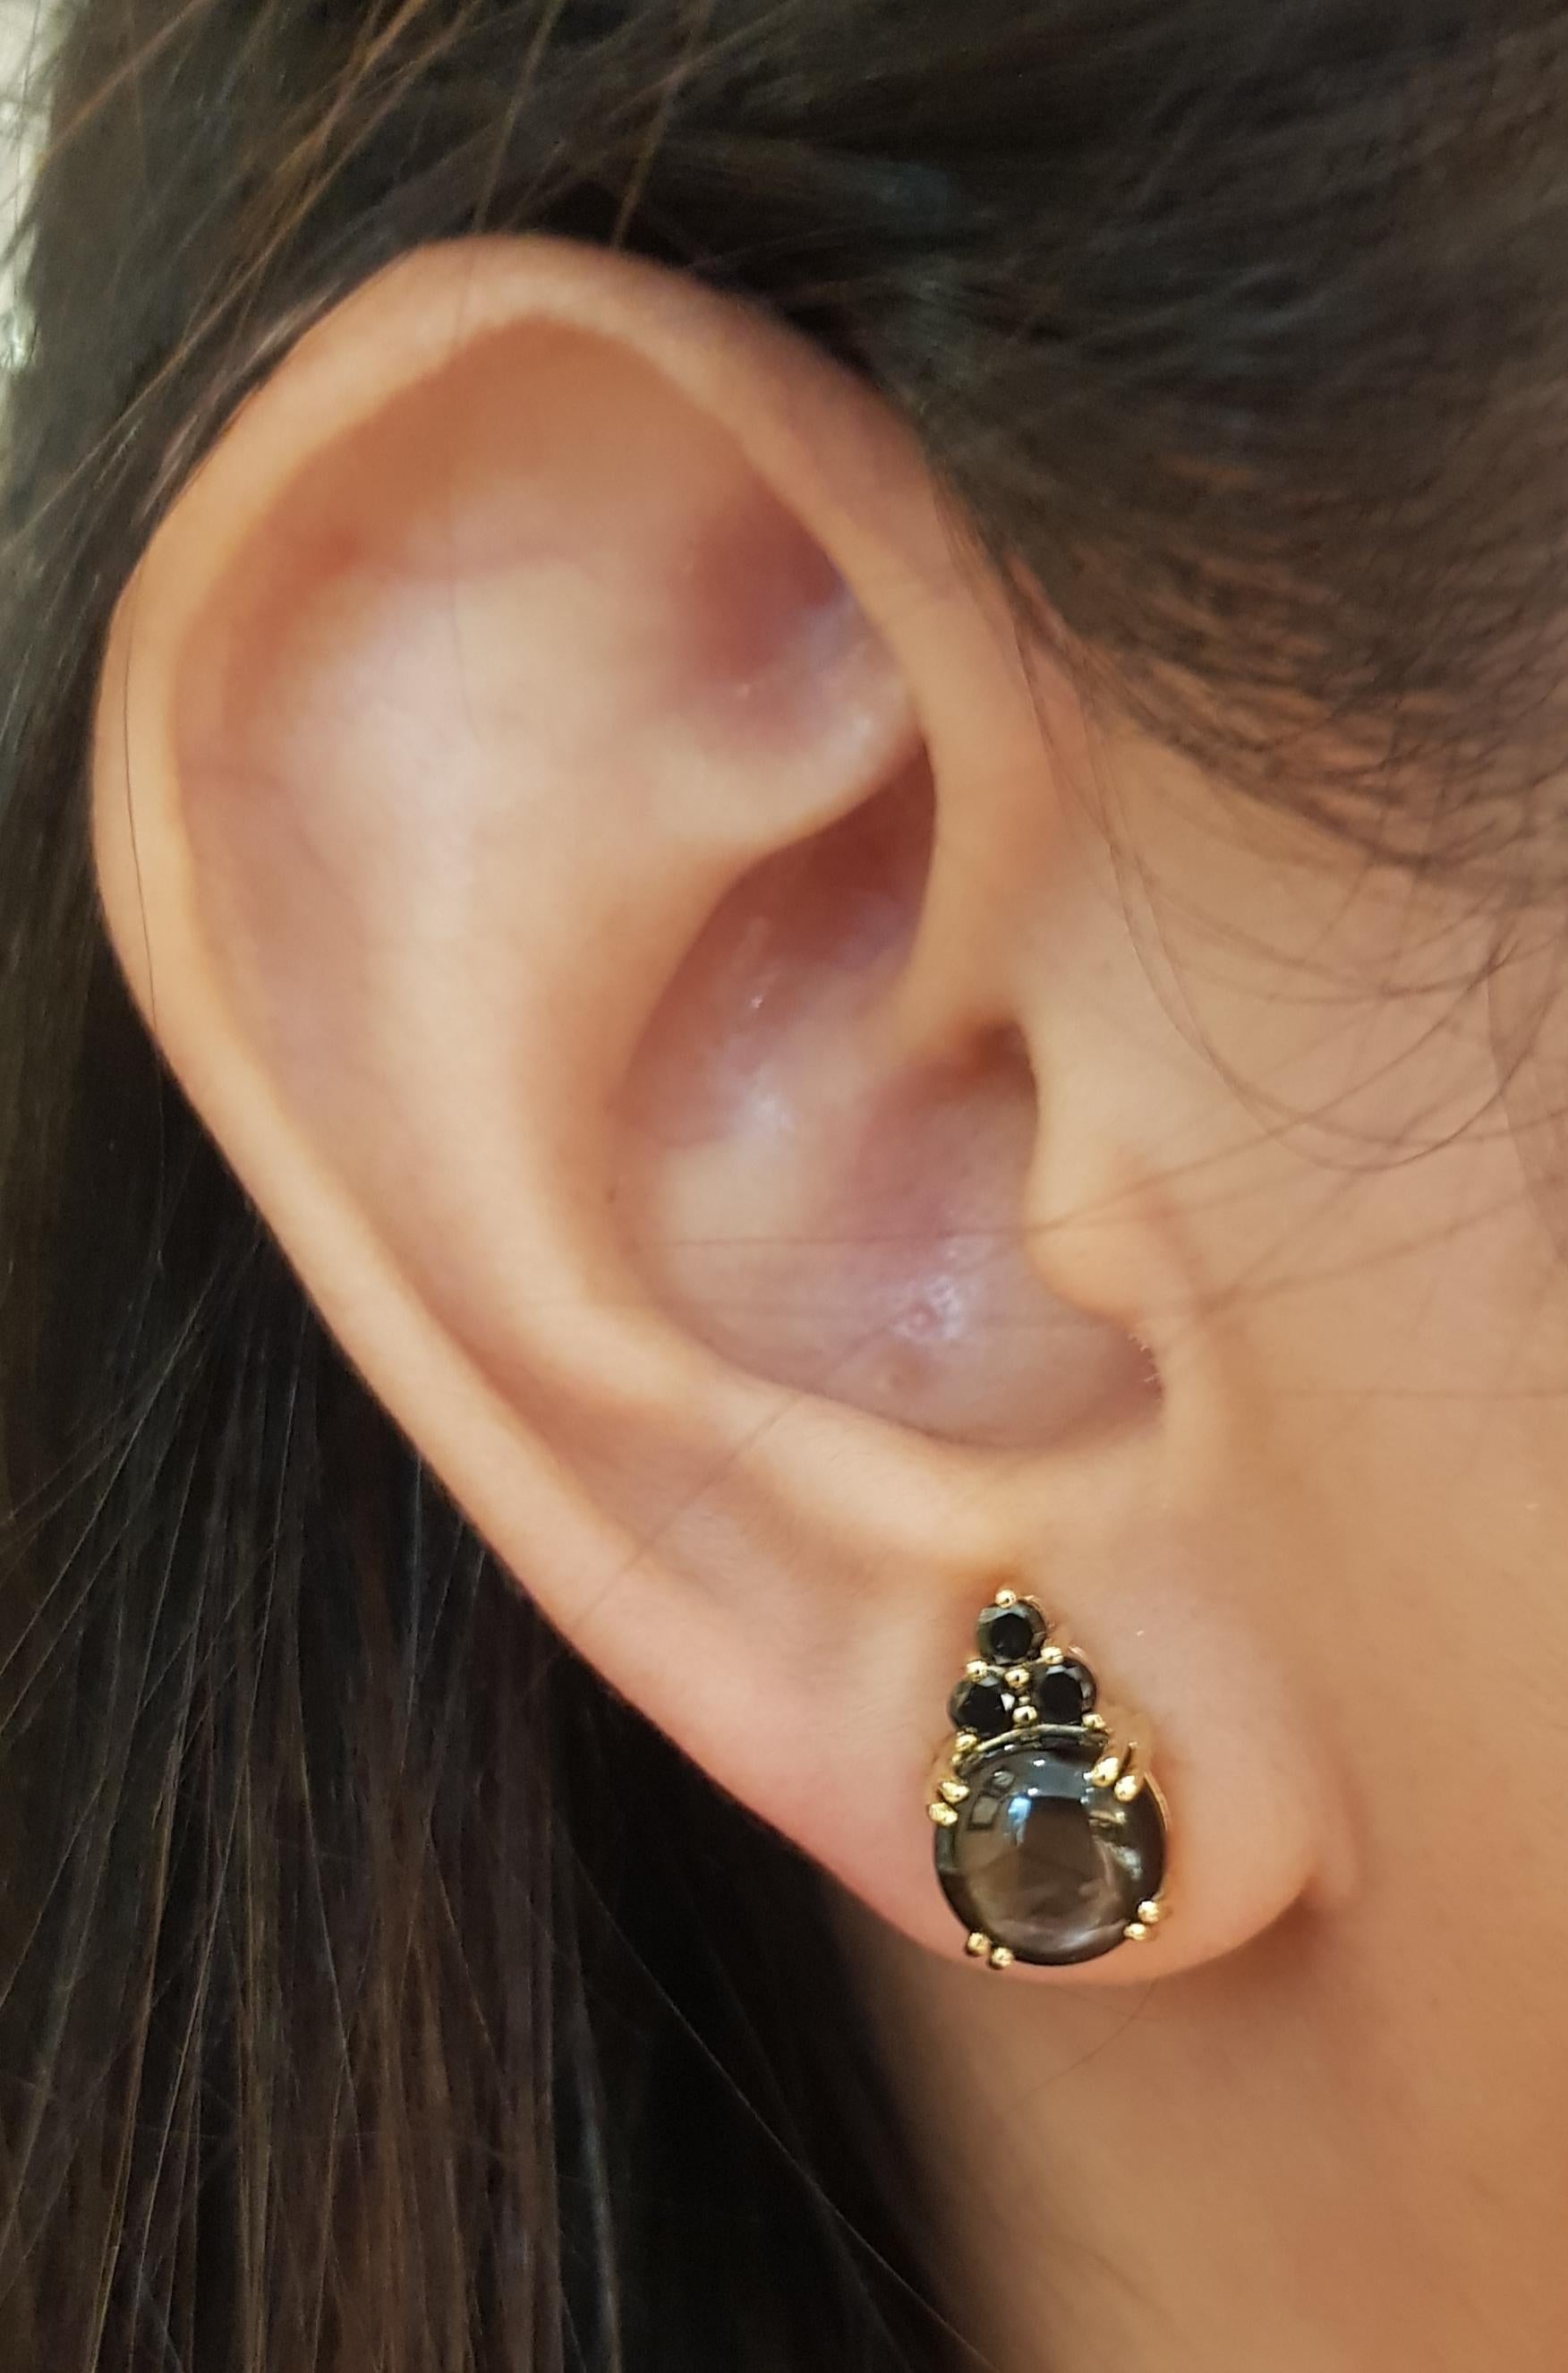 Boucles d'oreilles composées d'un saphir noir de 7,50 carats et d'un diamant noir de 0,27 carat sertis dans une monture en or 18 carats

Largeur : 0,8 cm 
Longueur : 1,2 cm
Poids total : 6,11 grammes

